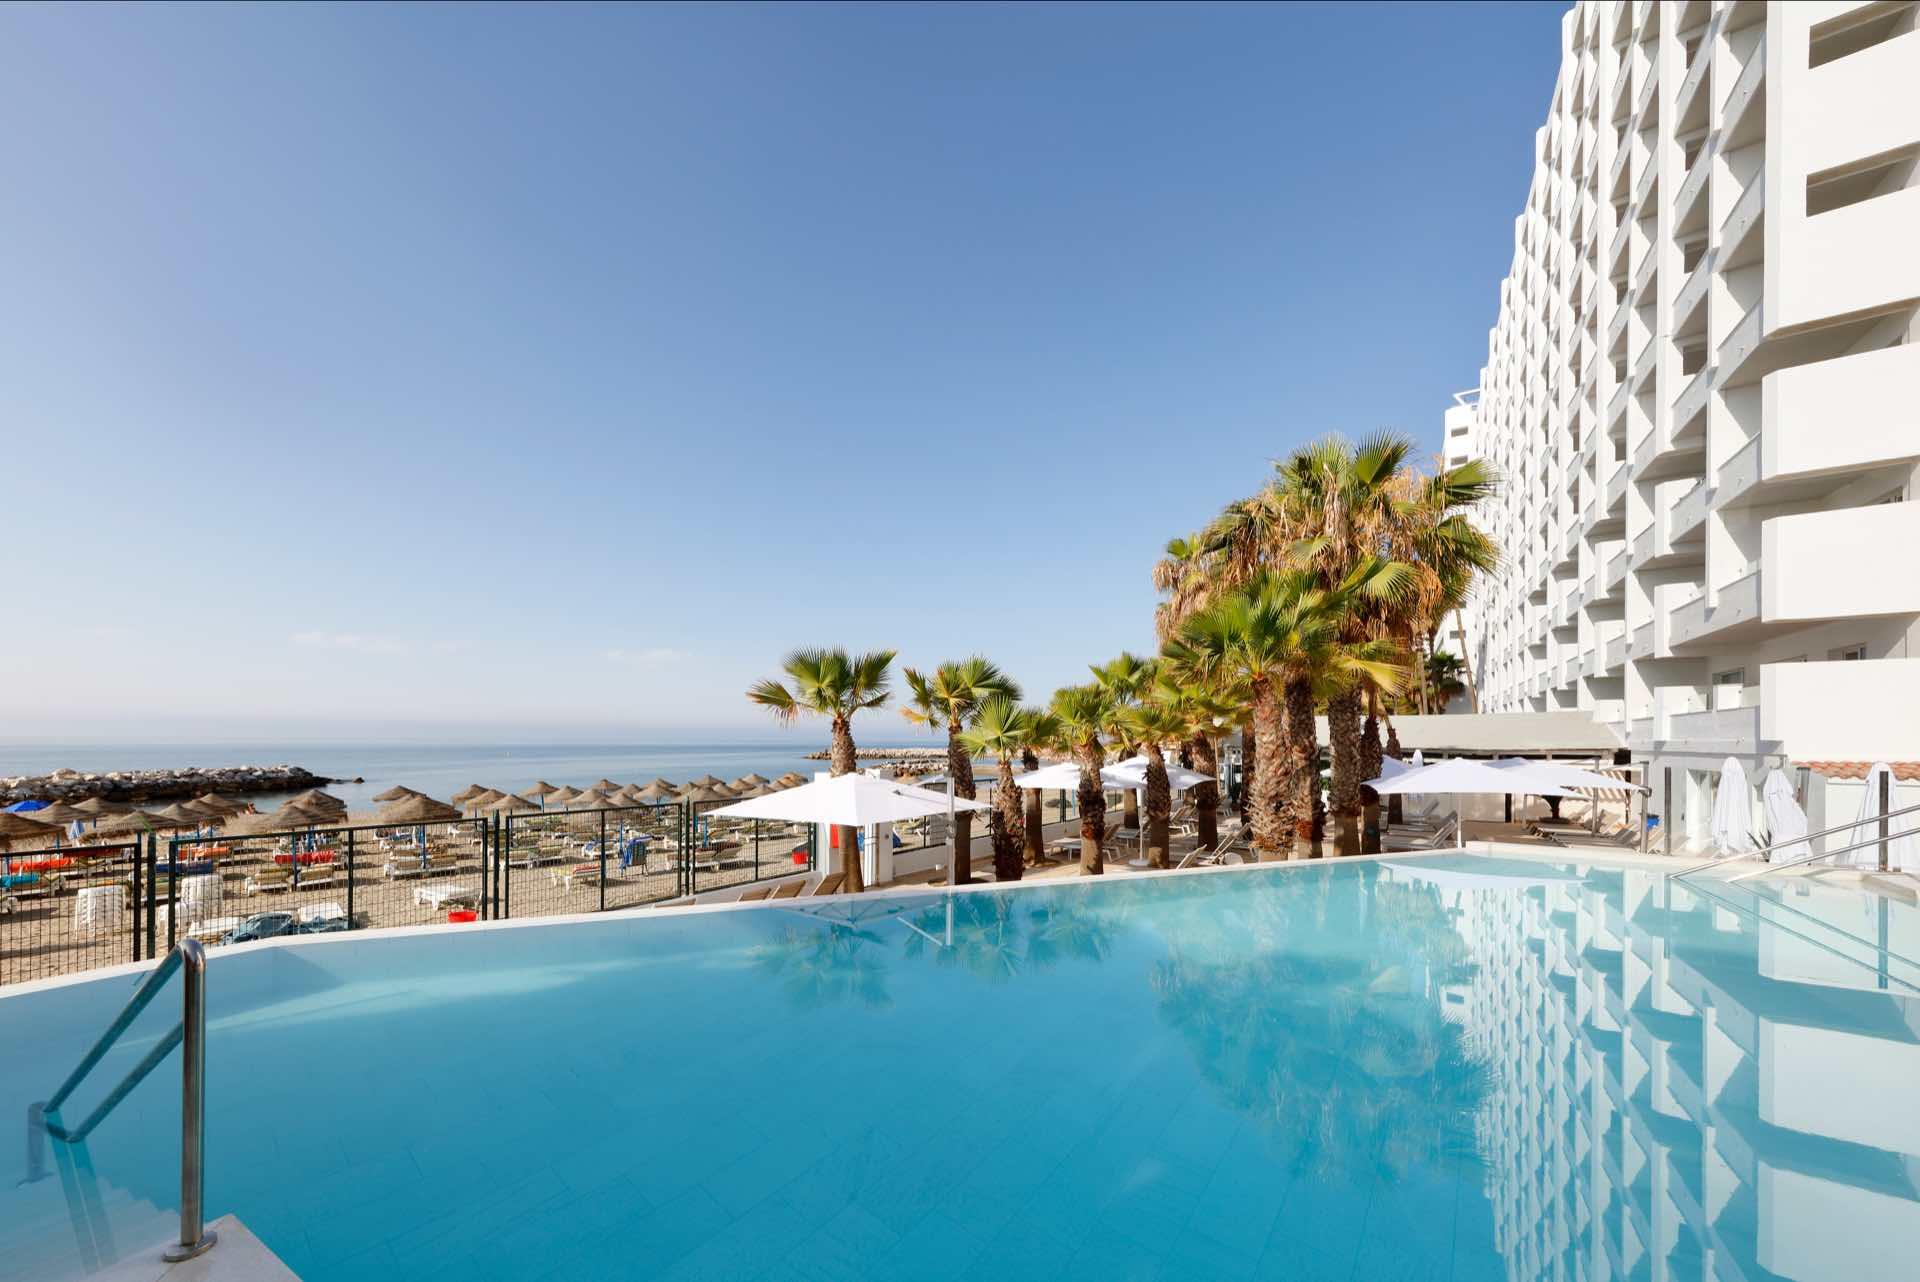 Benalma Hotel Costa del Sol - schauinsland-reisen